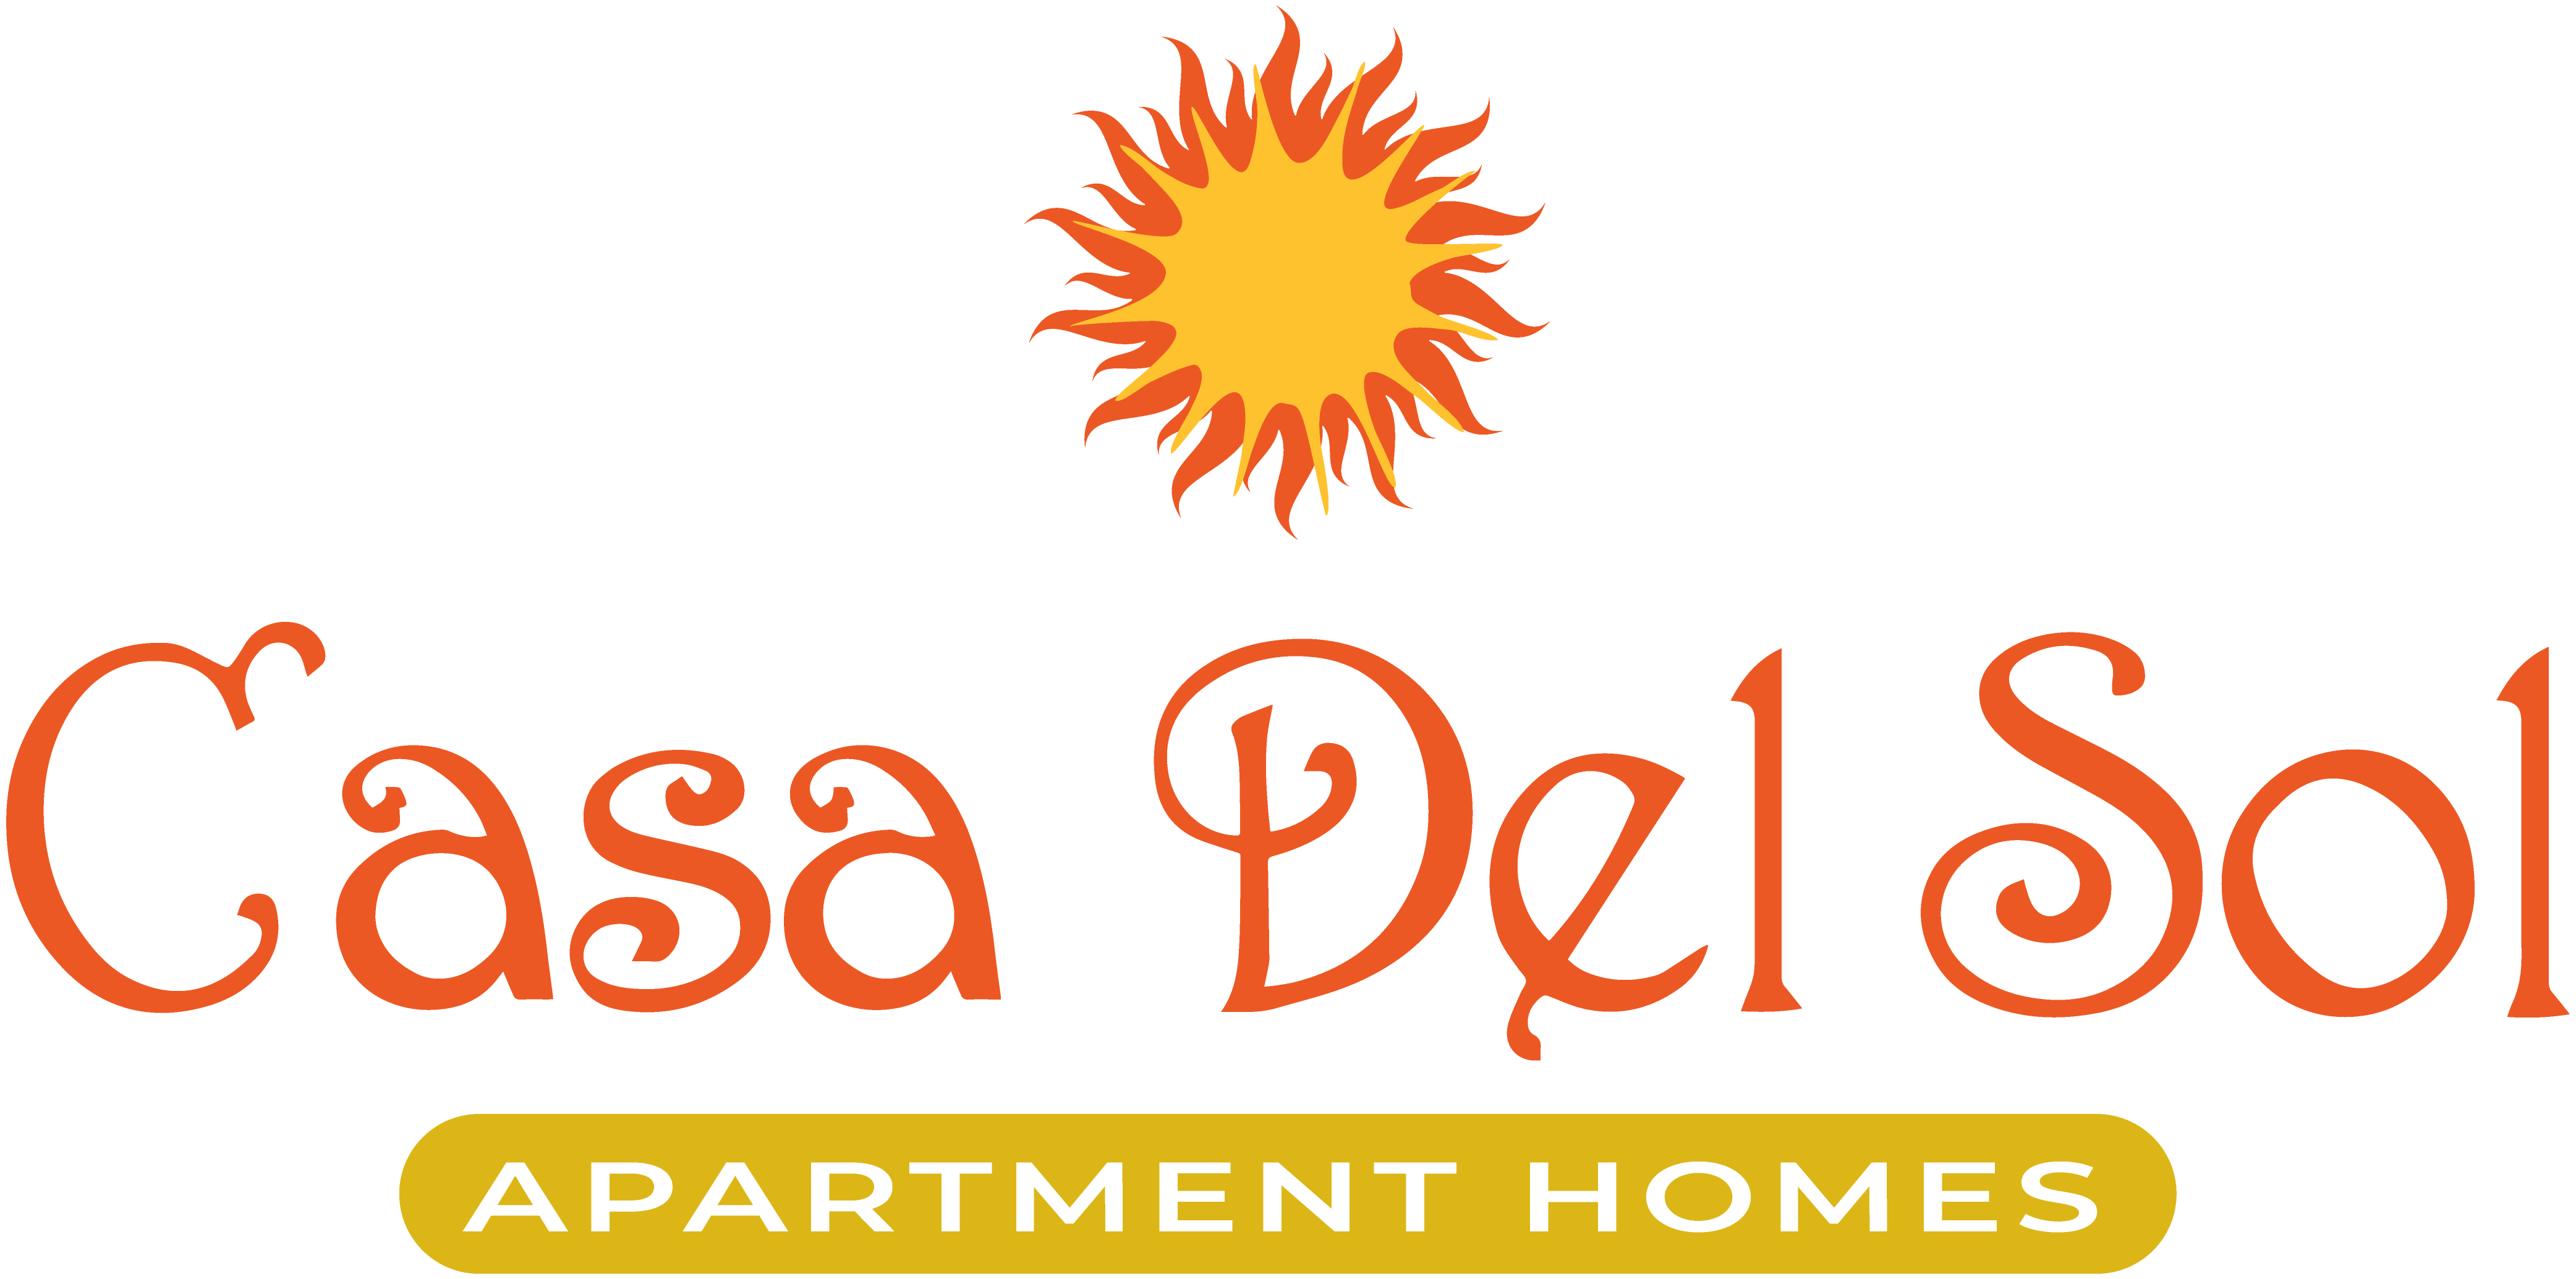 Casa Del Sol Promotional Logo